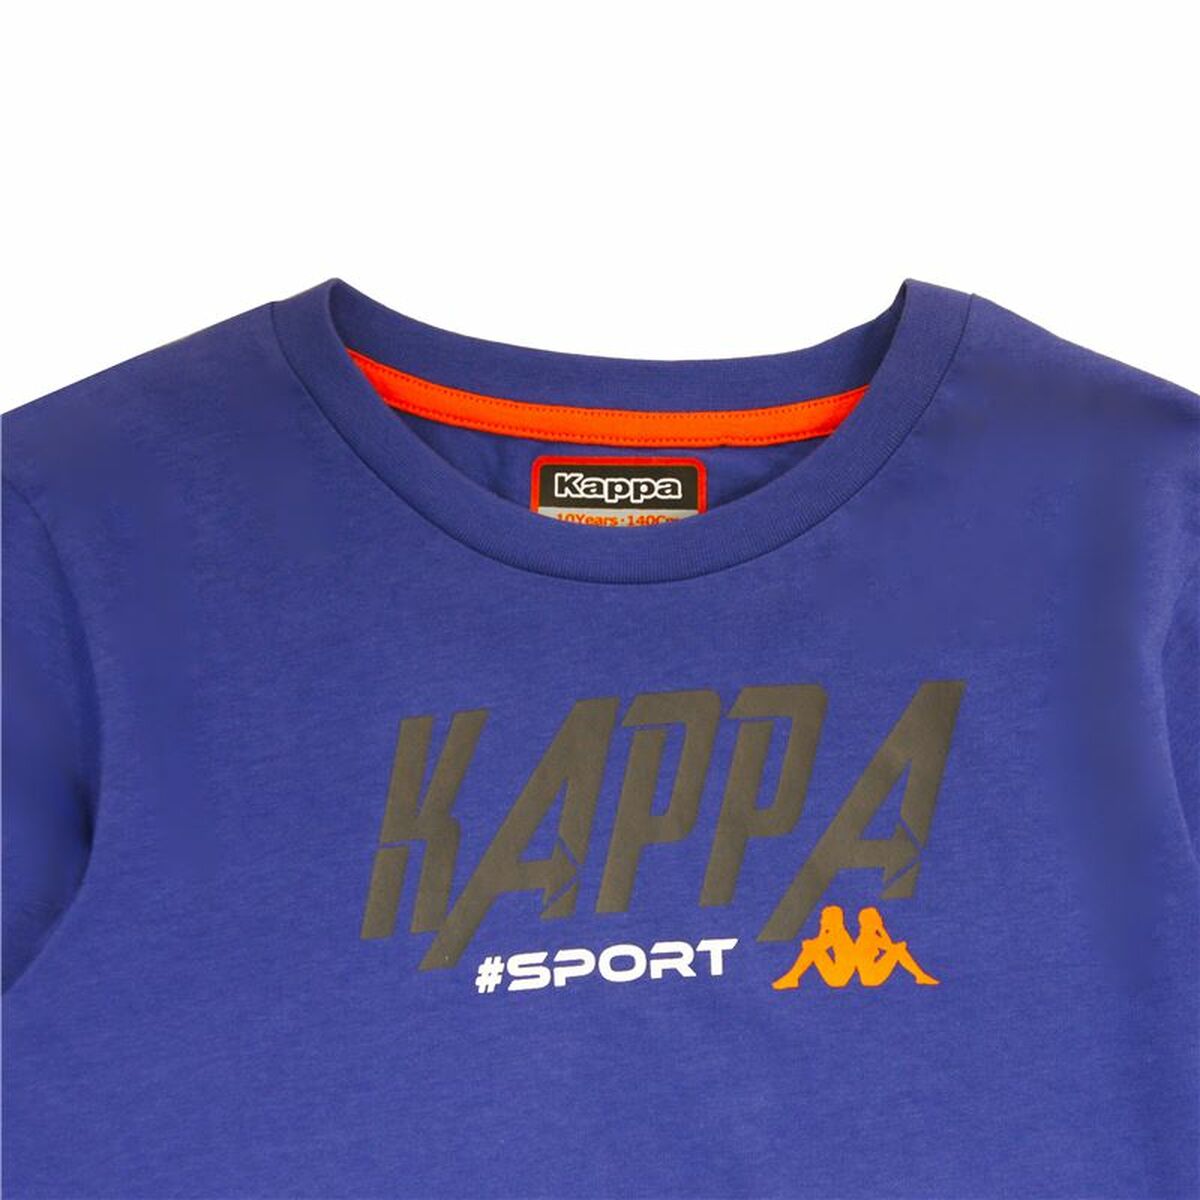 Maglia a Maniche Lunghe Bambino Kappa Sportswear Martial Azzurro